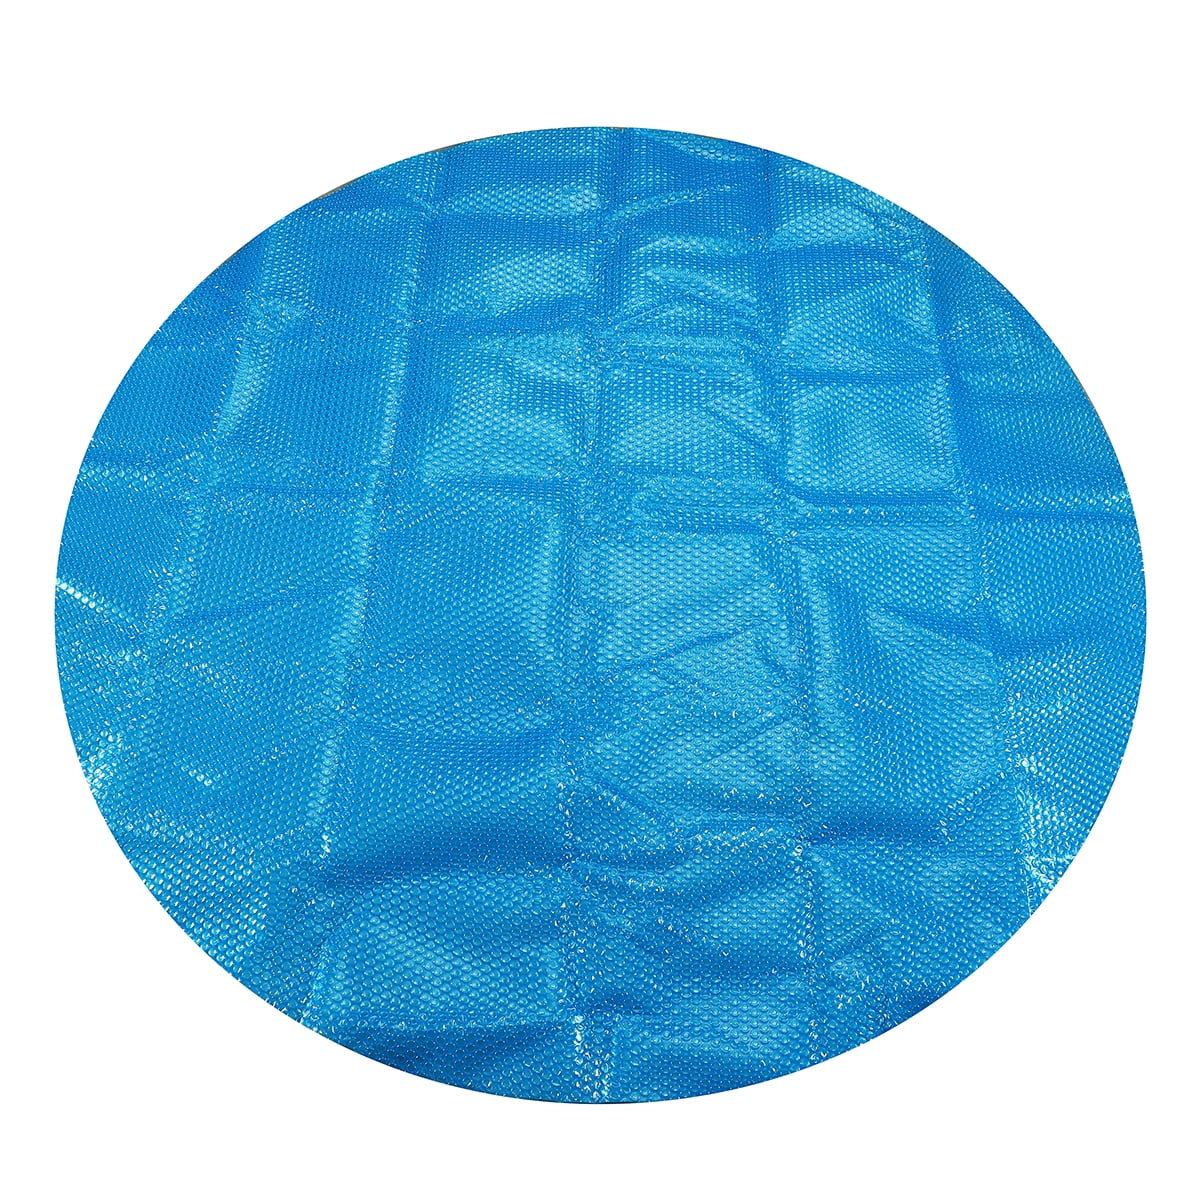 No-Branded Pool Cover Rond//carr/é Piscine Couverture 6 7ft Anti-UV Spa Bain /à remous Couverture Solaire Couverture Thermique Bubble Ground Pool Tissu Color : Bleu, Size : B